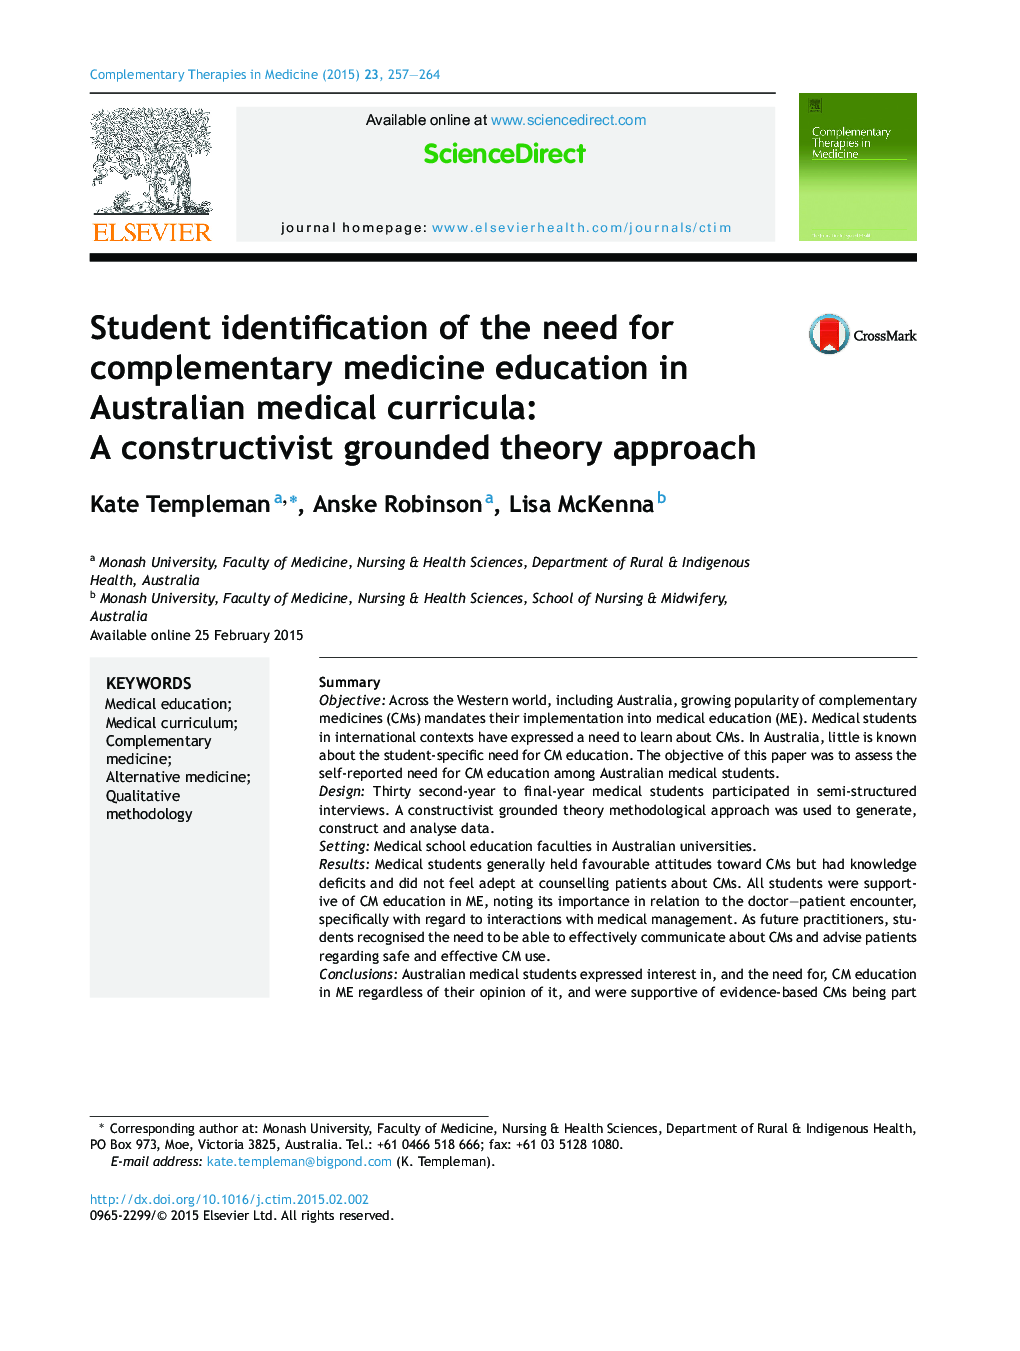 شناسایی دانشجویان از نیاز به آموزش پزشکی مکمل در برنامه درسی پزشکی استرالیا: یک رویکرد تئوری مبتنی بر سازنده گرا